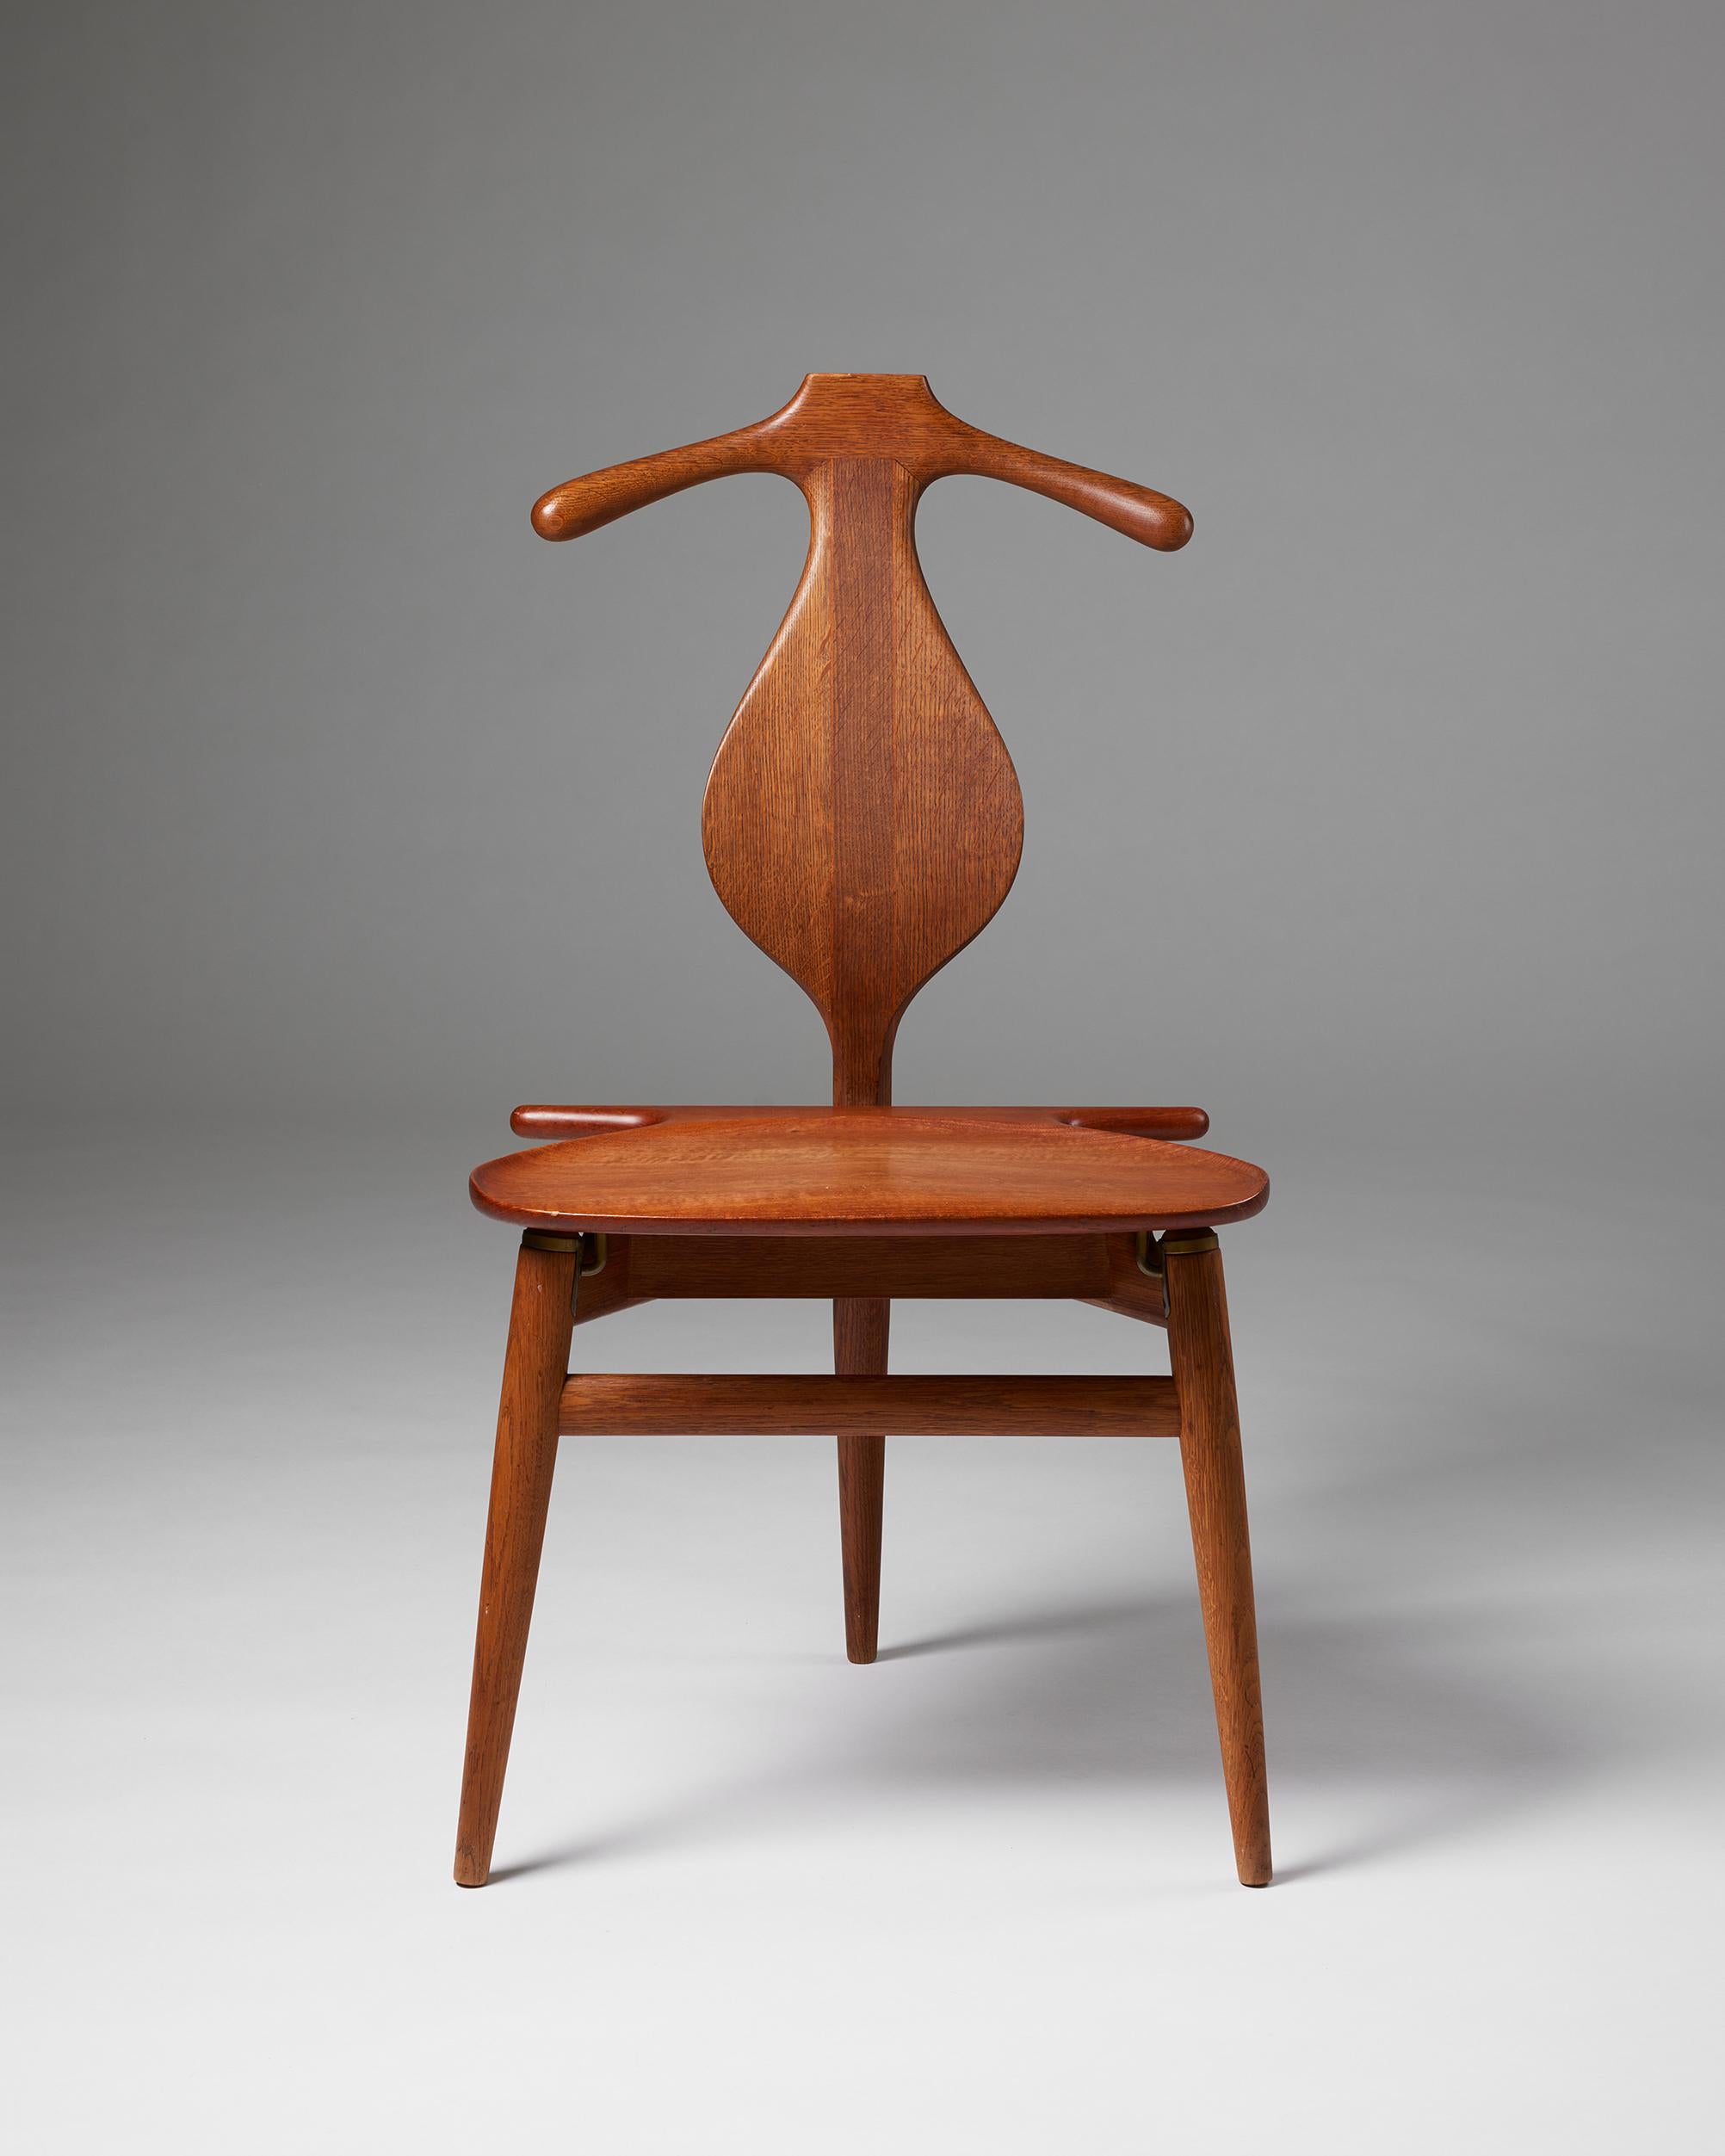 Valet chair model 540 designed by Hans J. Wegner for Johannes Jansen,
Denmark, 1953.

Teak, oak and brass.

Stamped.

H: 94 cm
W: 51 cm
D: 50 cm
SH: 44.5 cm

Hans J. Wegner is the father of Danish design and is well known for creating